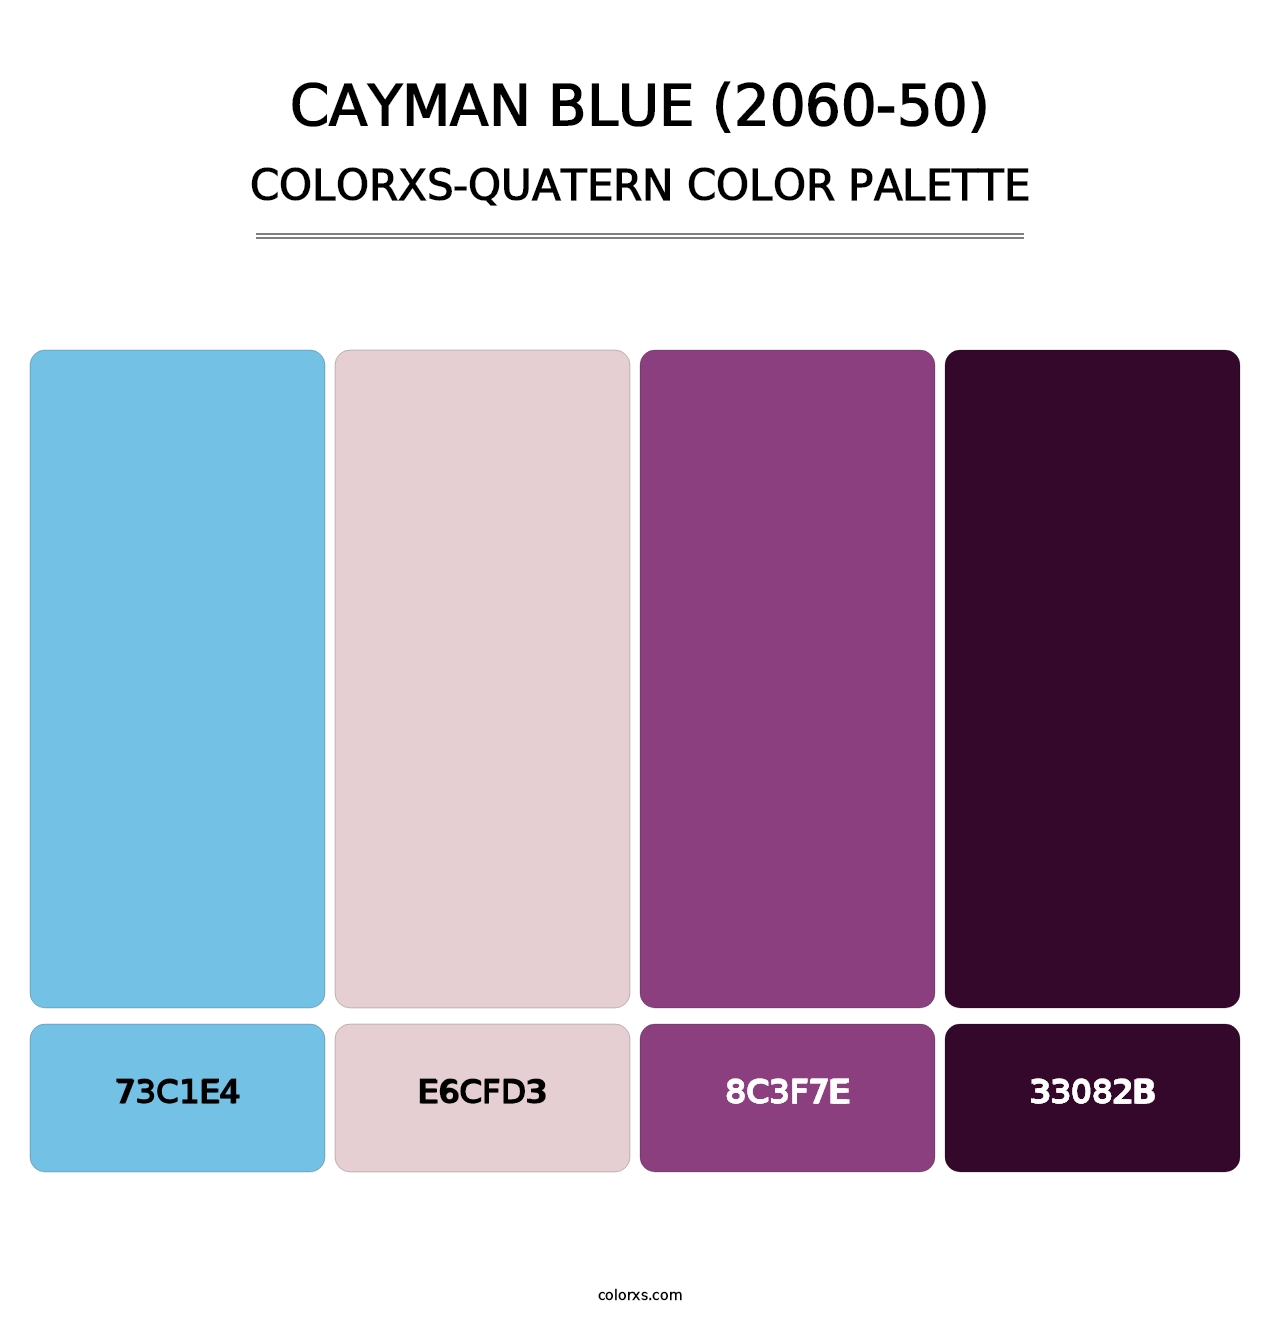 Cayman Blue (2060-50) - Colorxs Quatern Palette